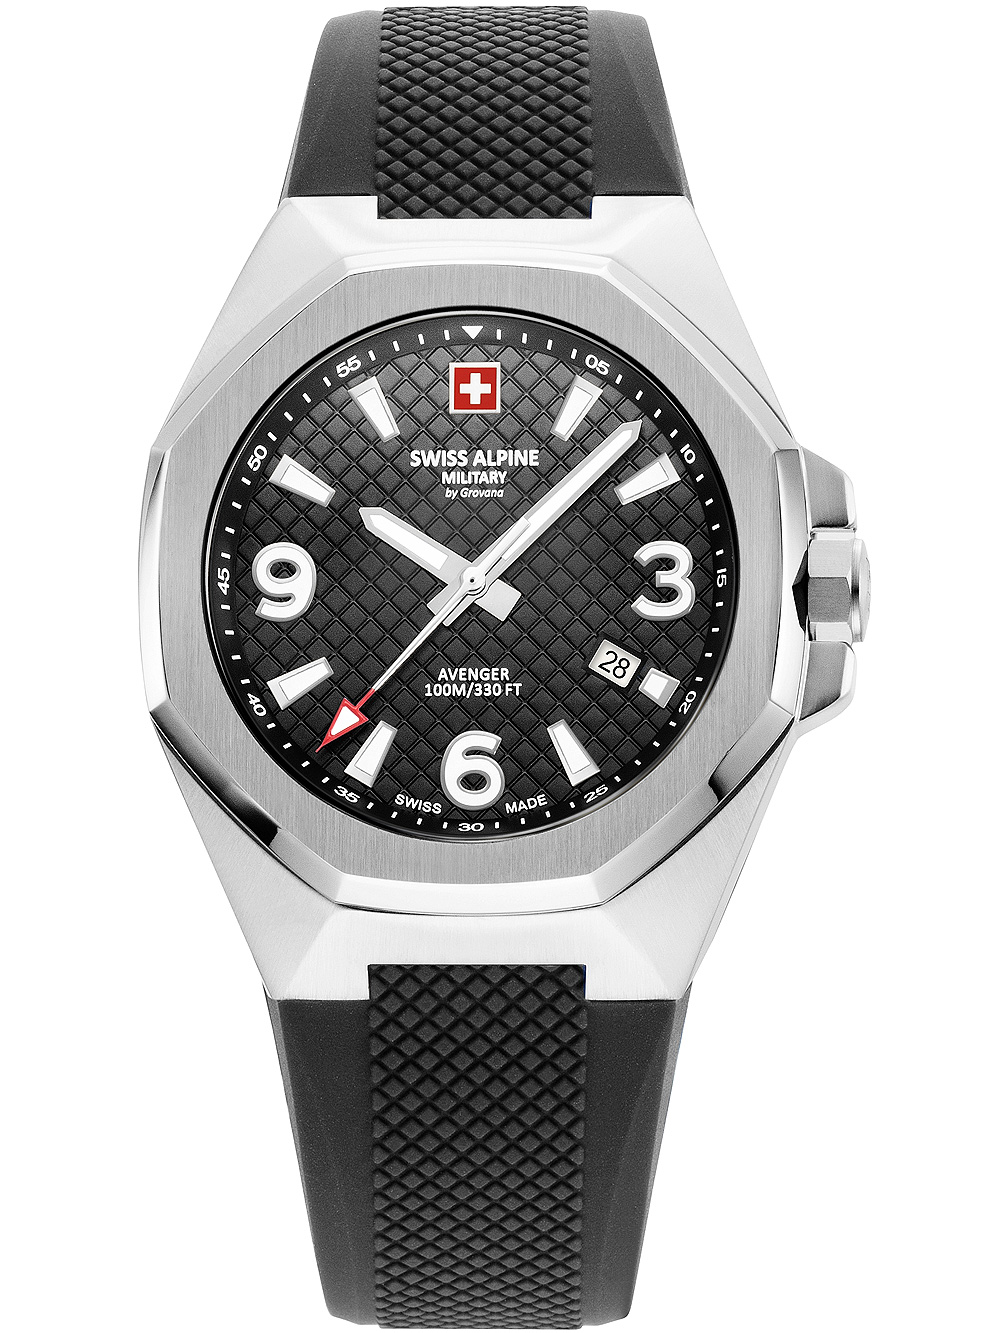 Pánské hodinky Swiss Alpine Military 7005.1837 Avenger